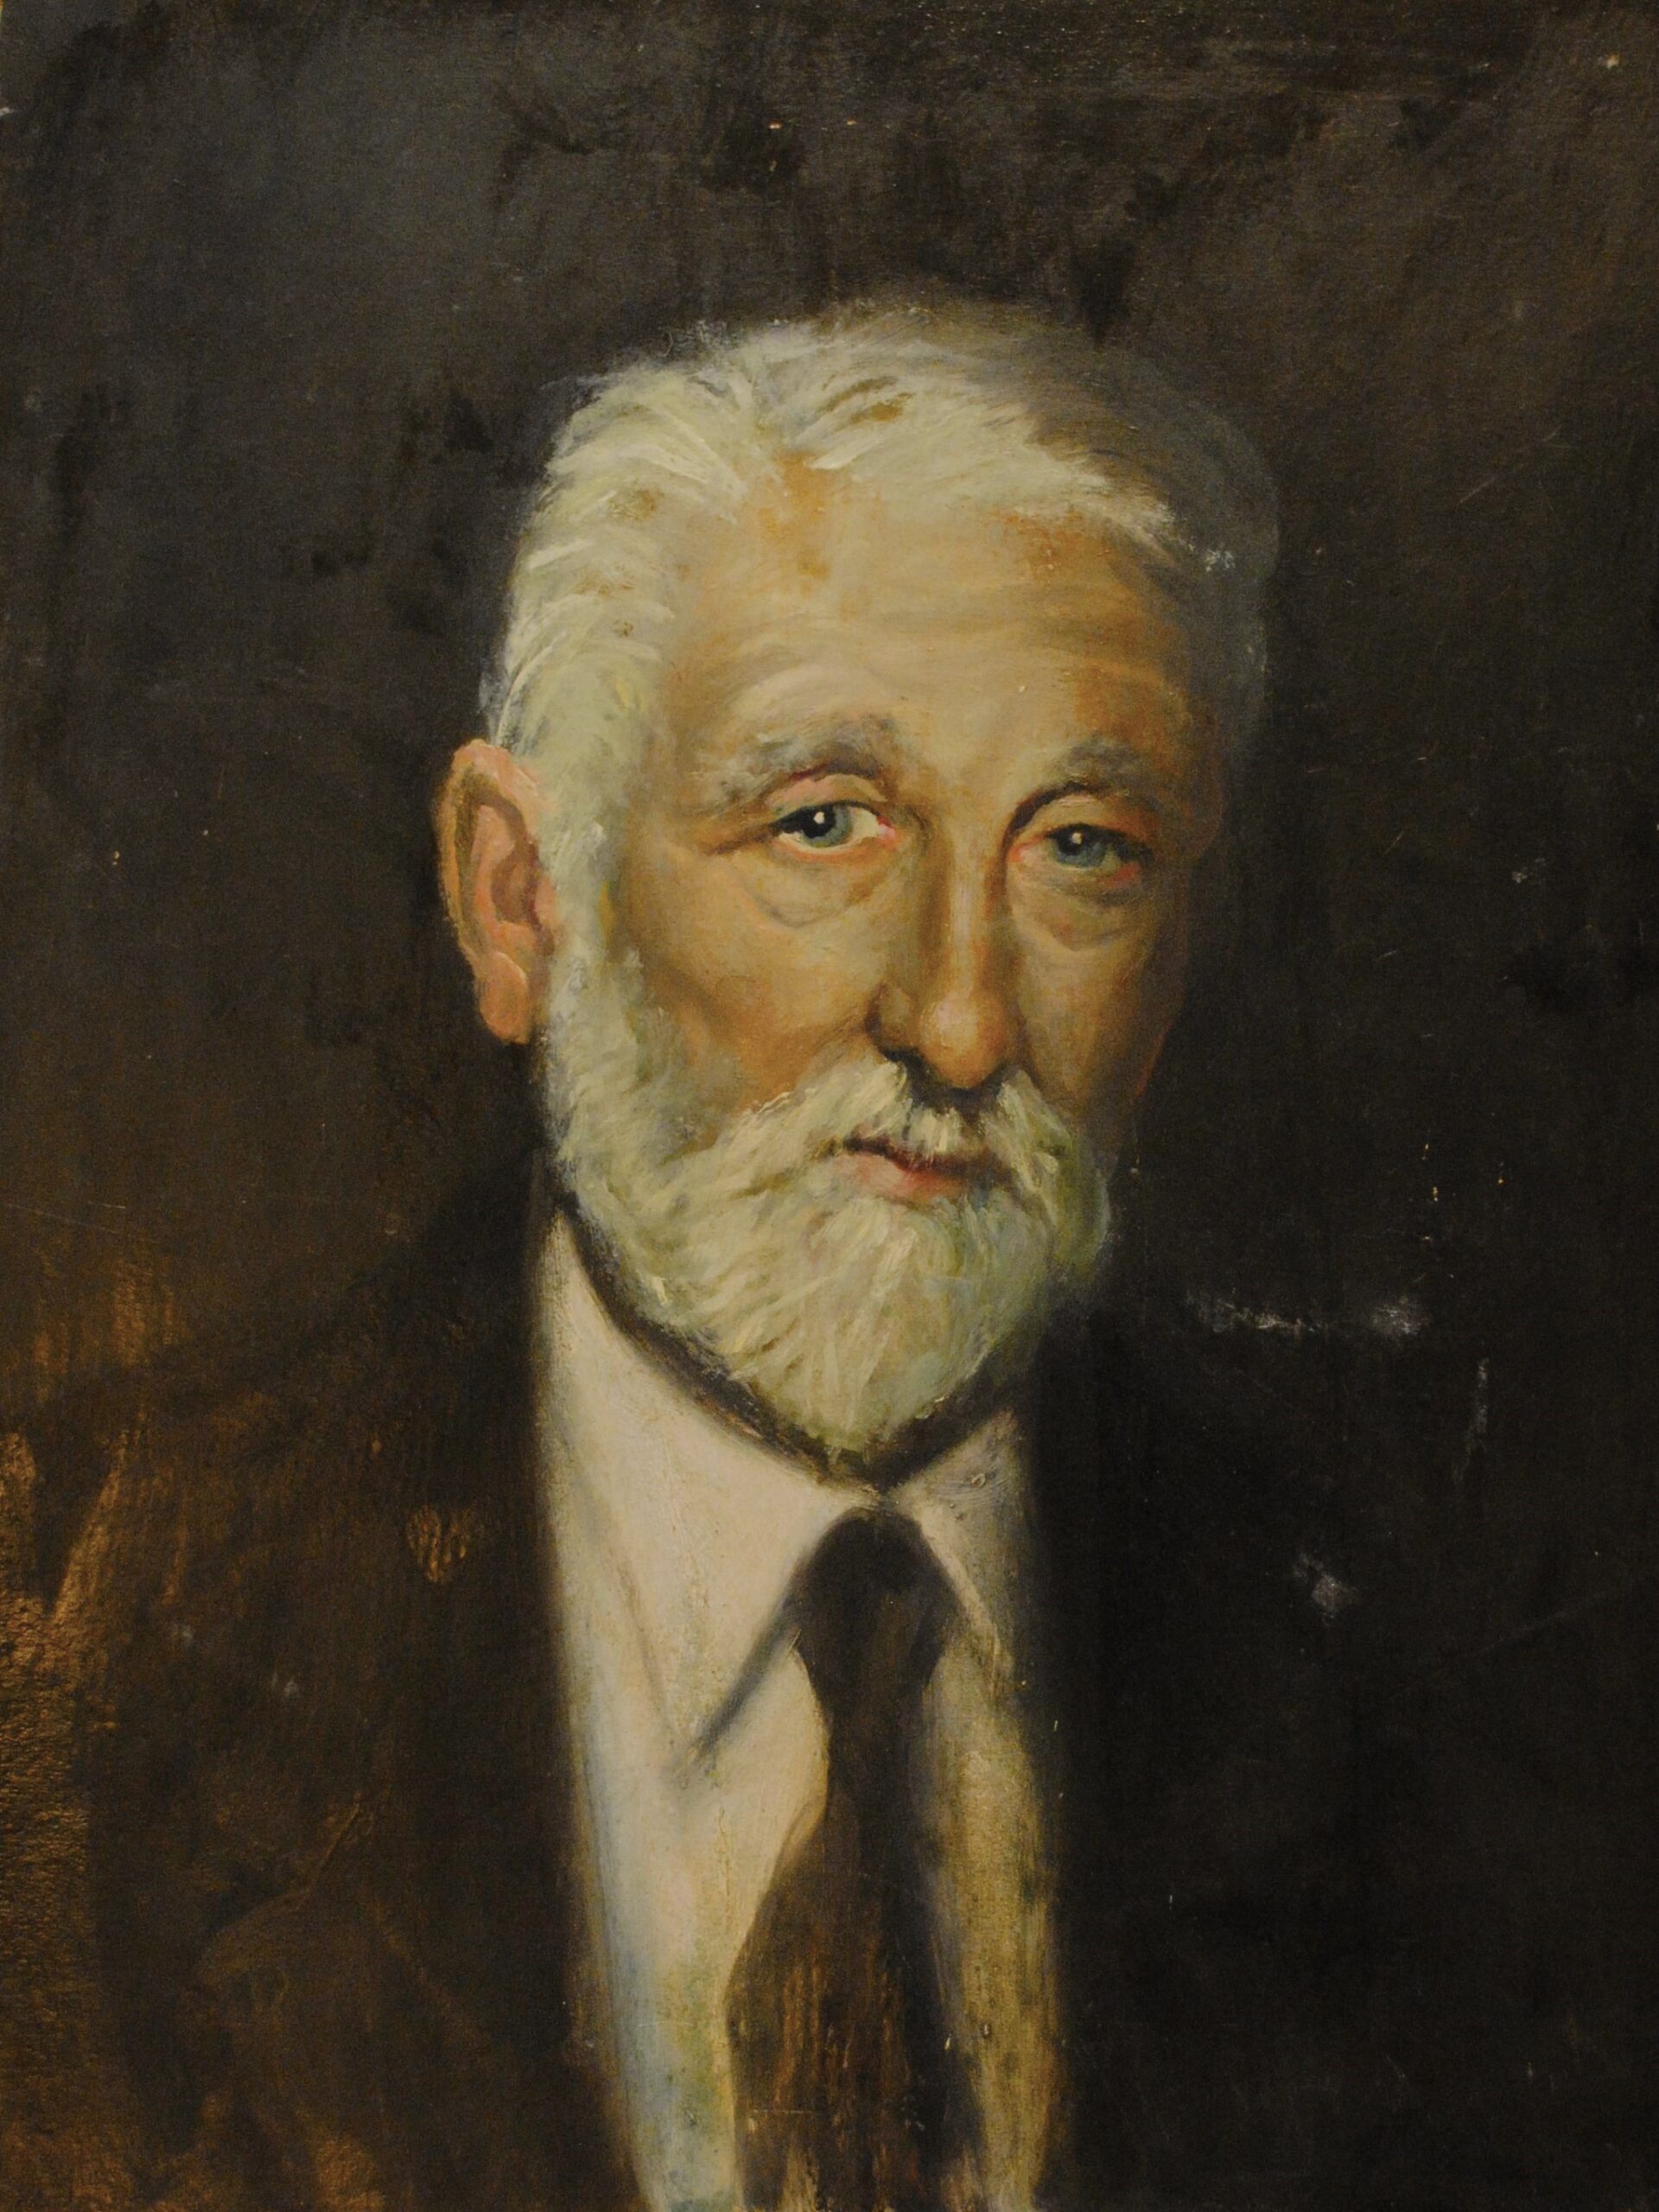 Pintura de José Manaut titulada Retrato de hombre pelo blanco y barba, 1950. Óleo sobre cartón.